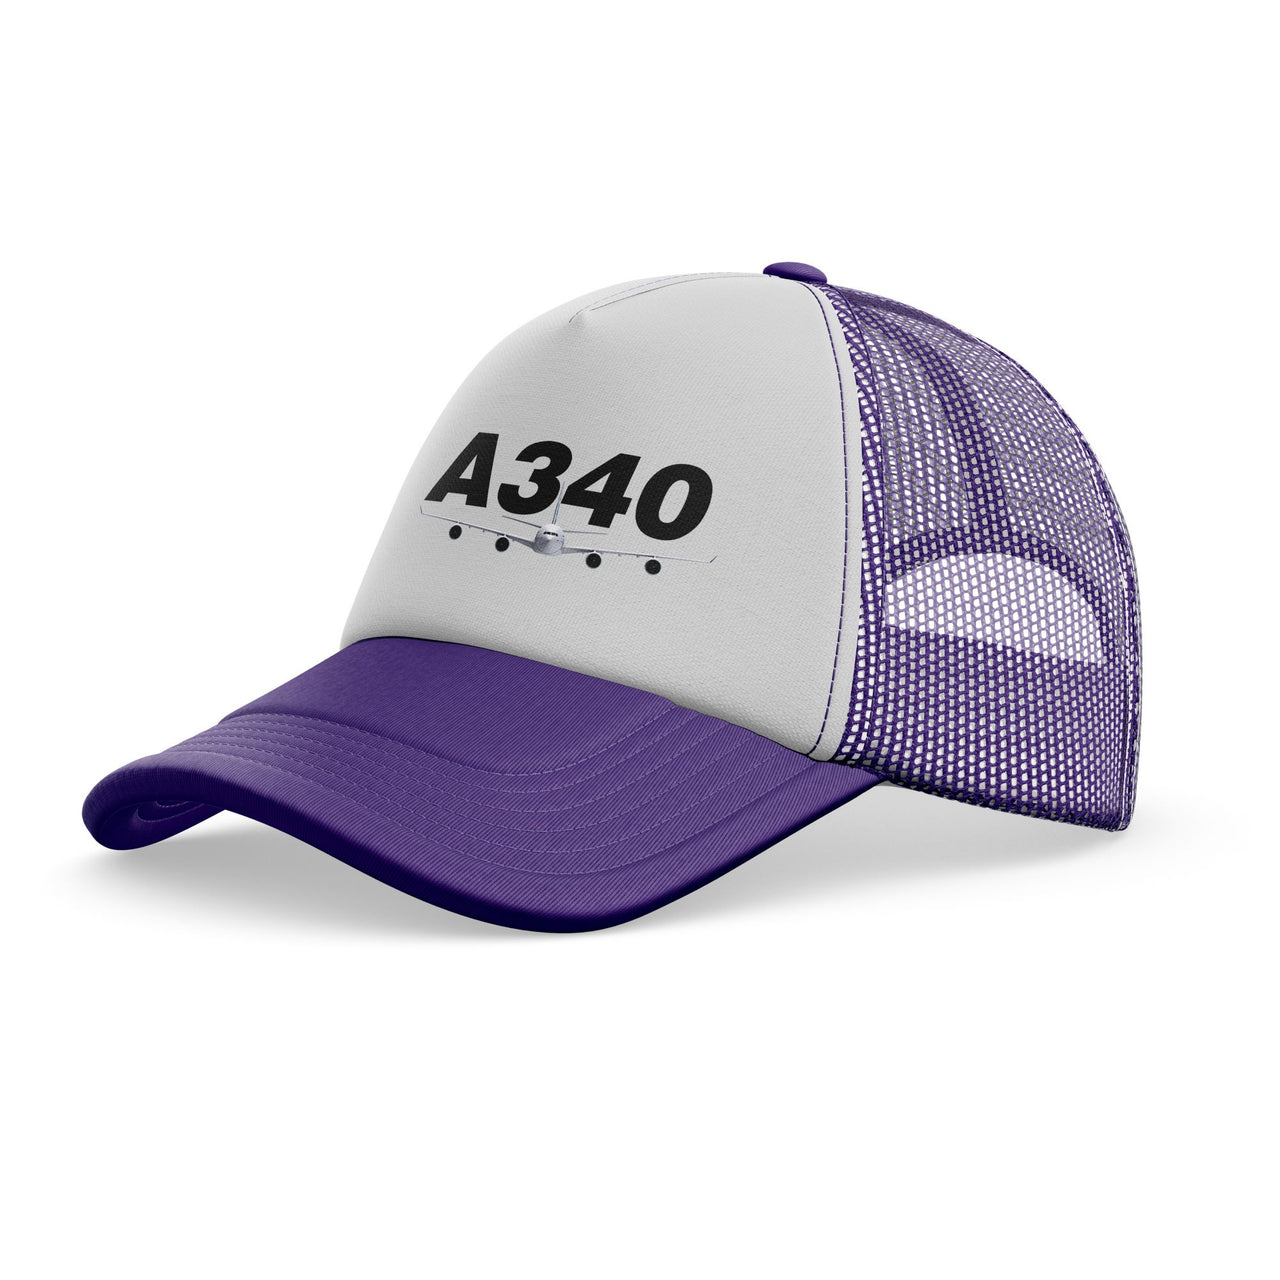 Super Airbus A340 Designed Trucker Caps & Hats